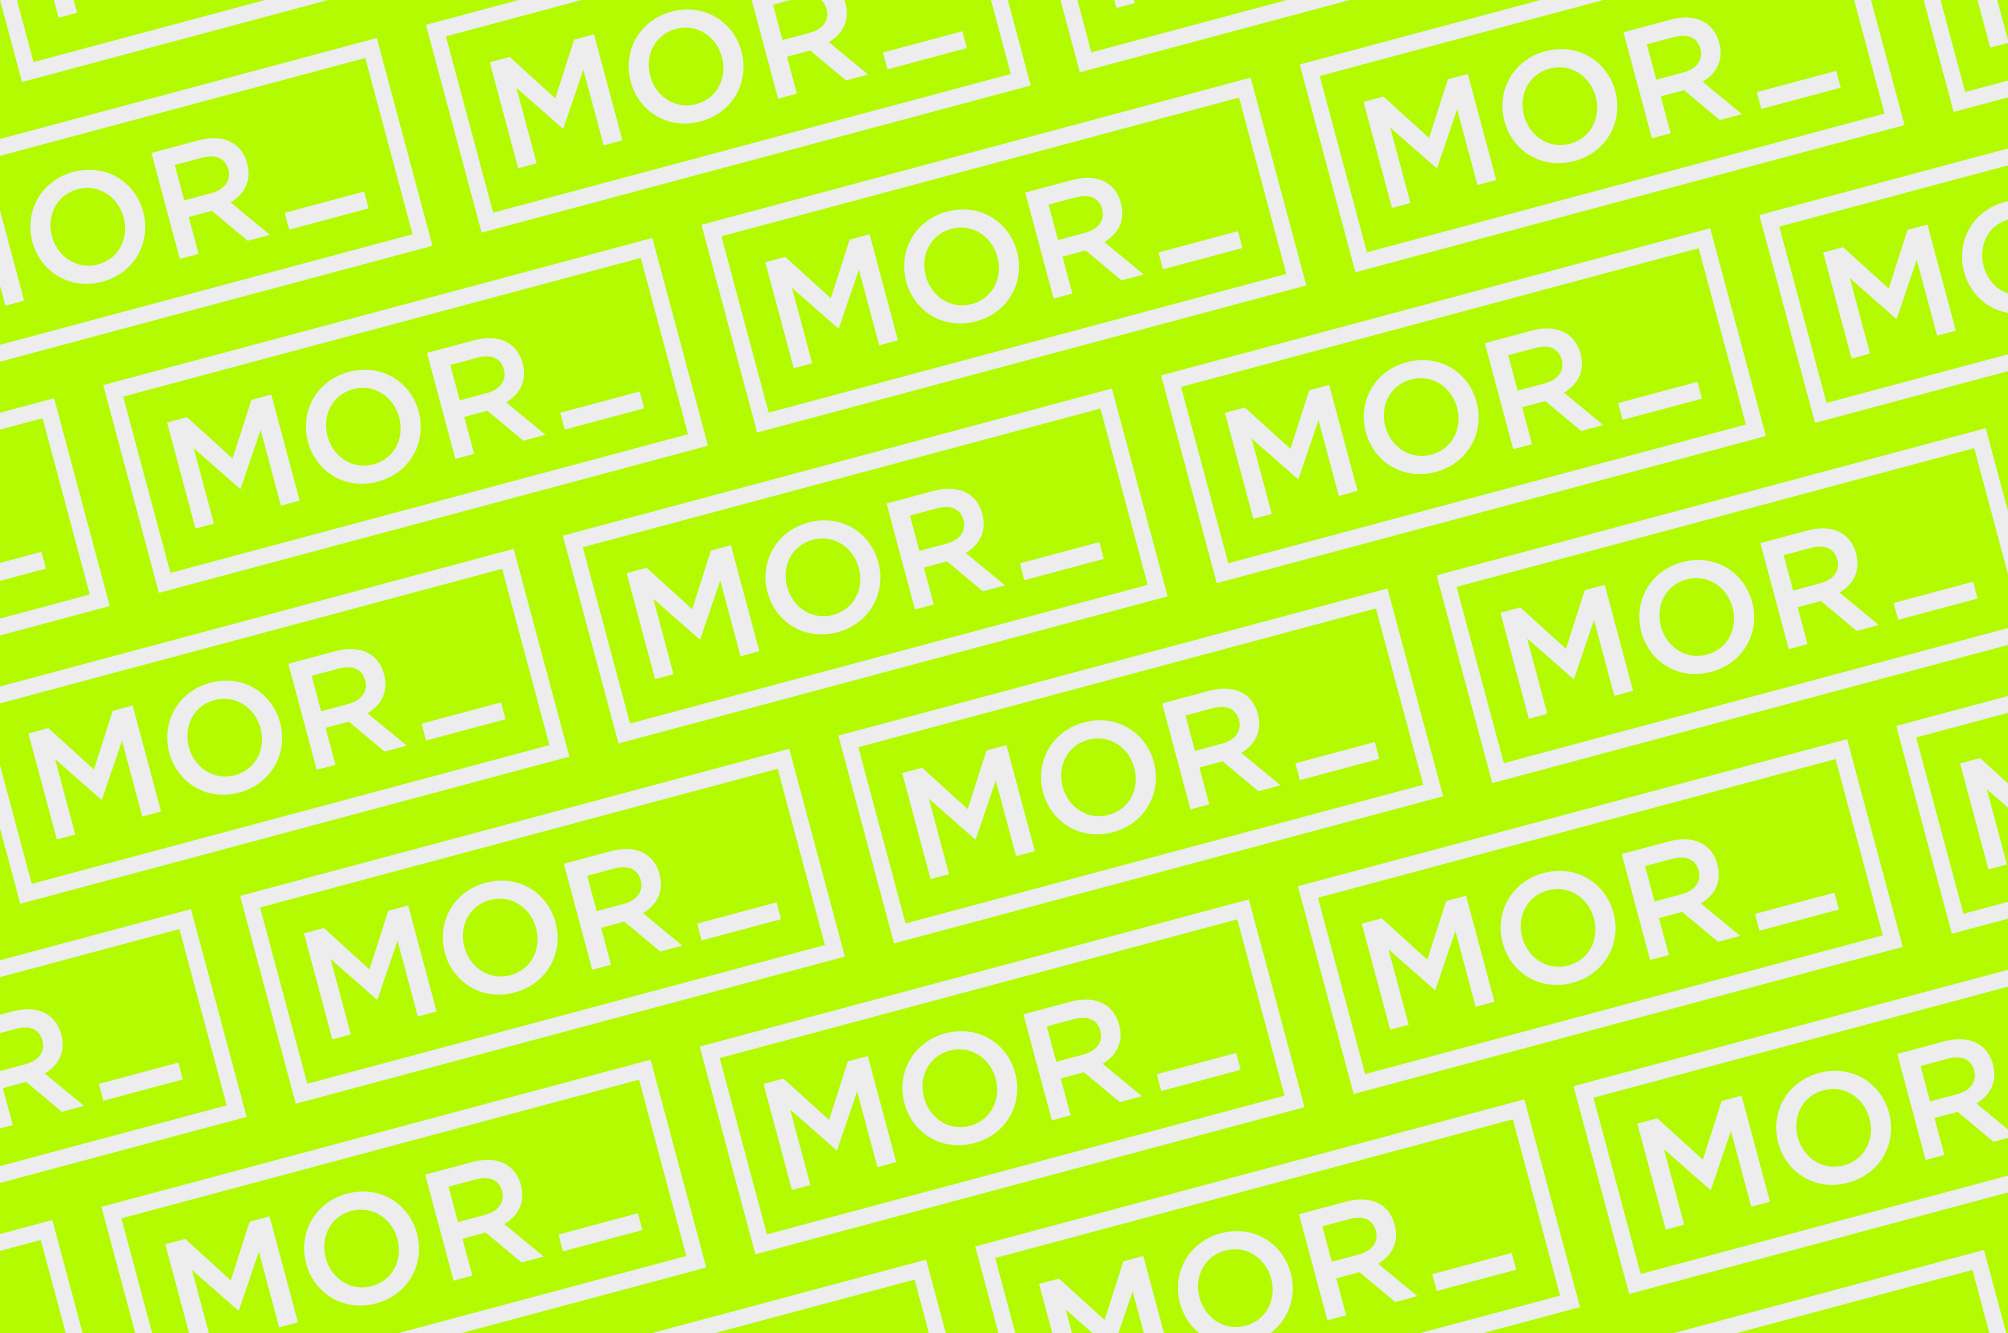 MOR_ Logo repeating pattern